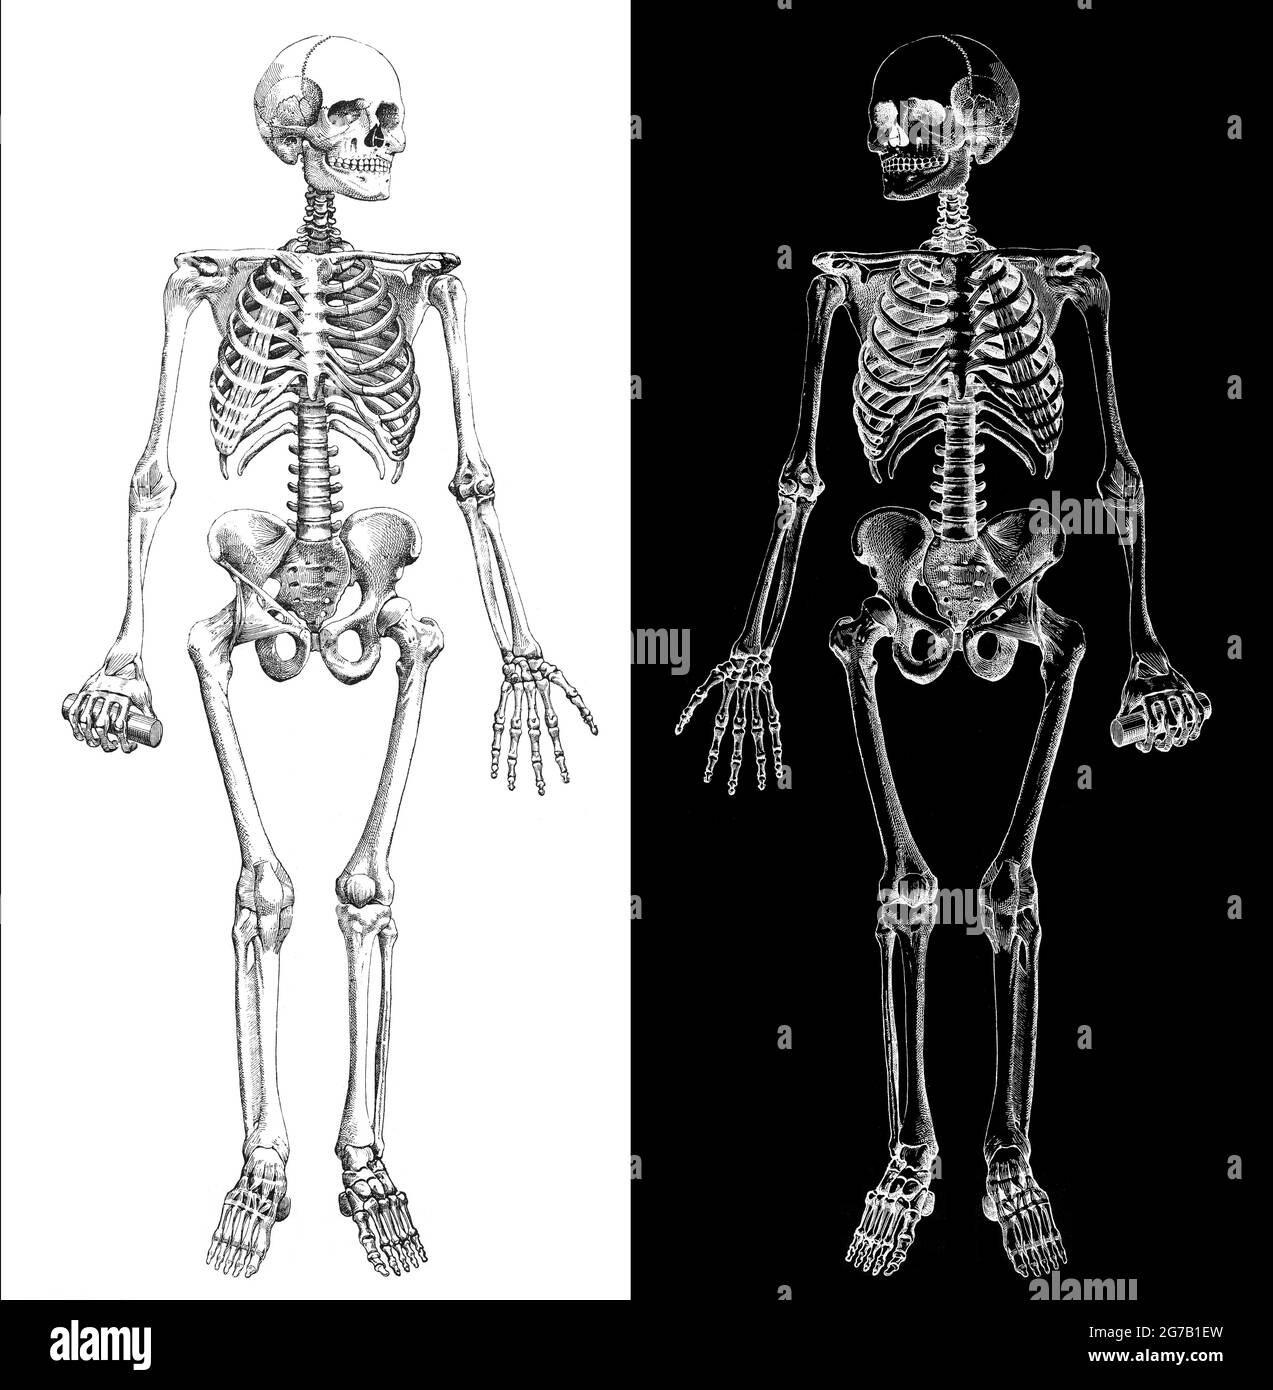 Le squelette humain. Image composite modifiée extraite d'une illustration médicale antique du squelette humain vers 1900 par Larousse, Pierre, Augé et Claude Banque D'Images